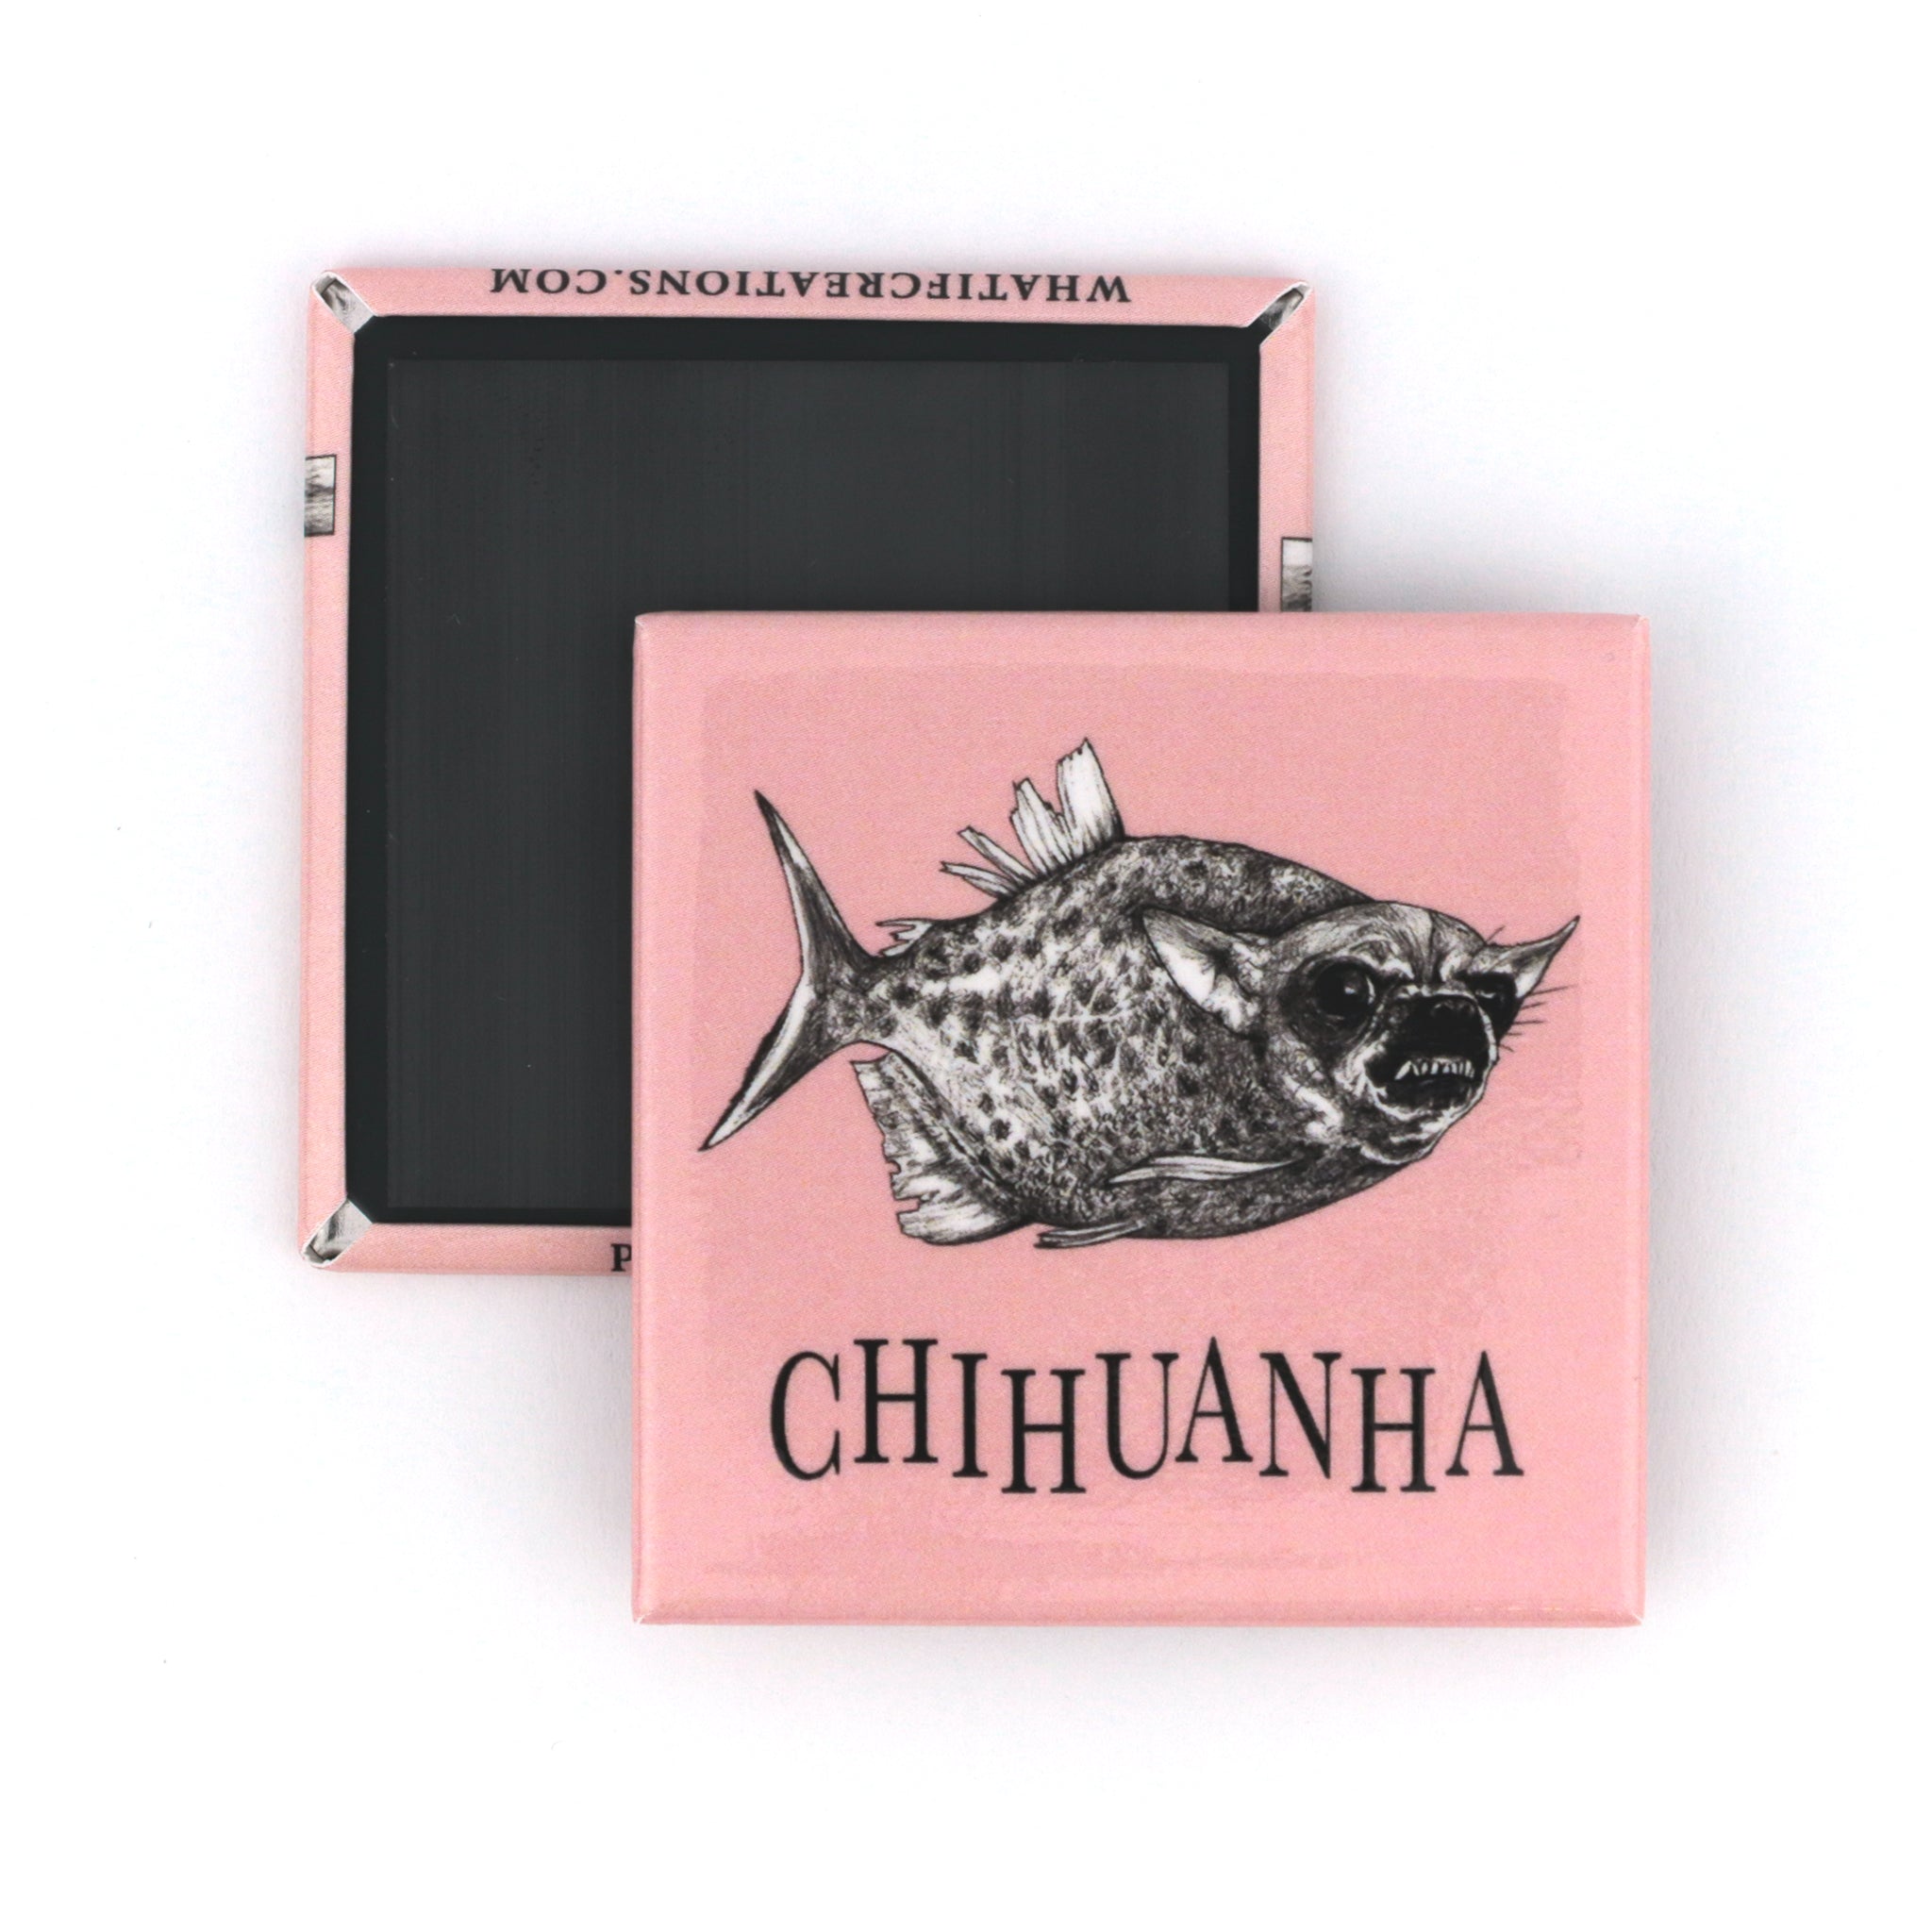 Chihuanha | Piranha + Chihuahua Hybrid Animal | 2" Fridge Magnet